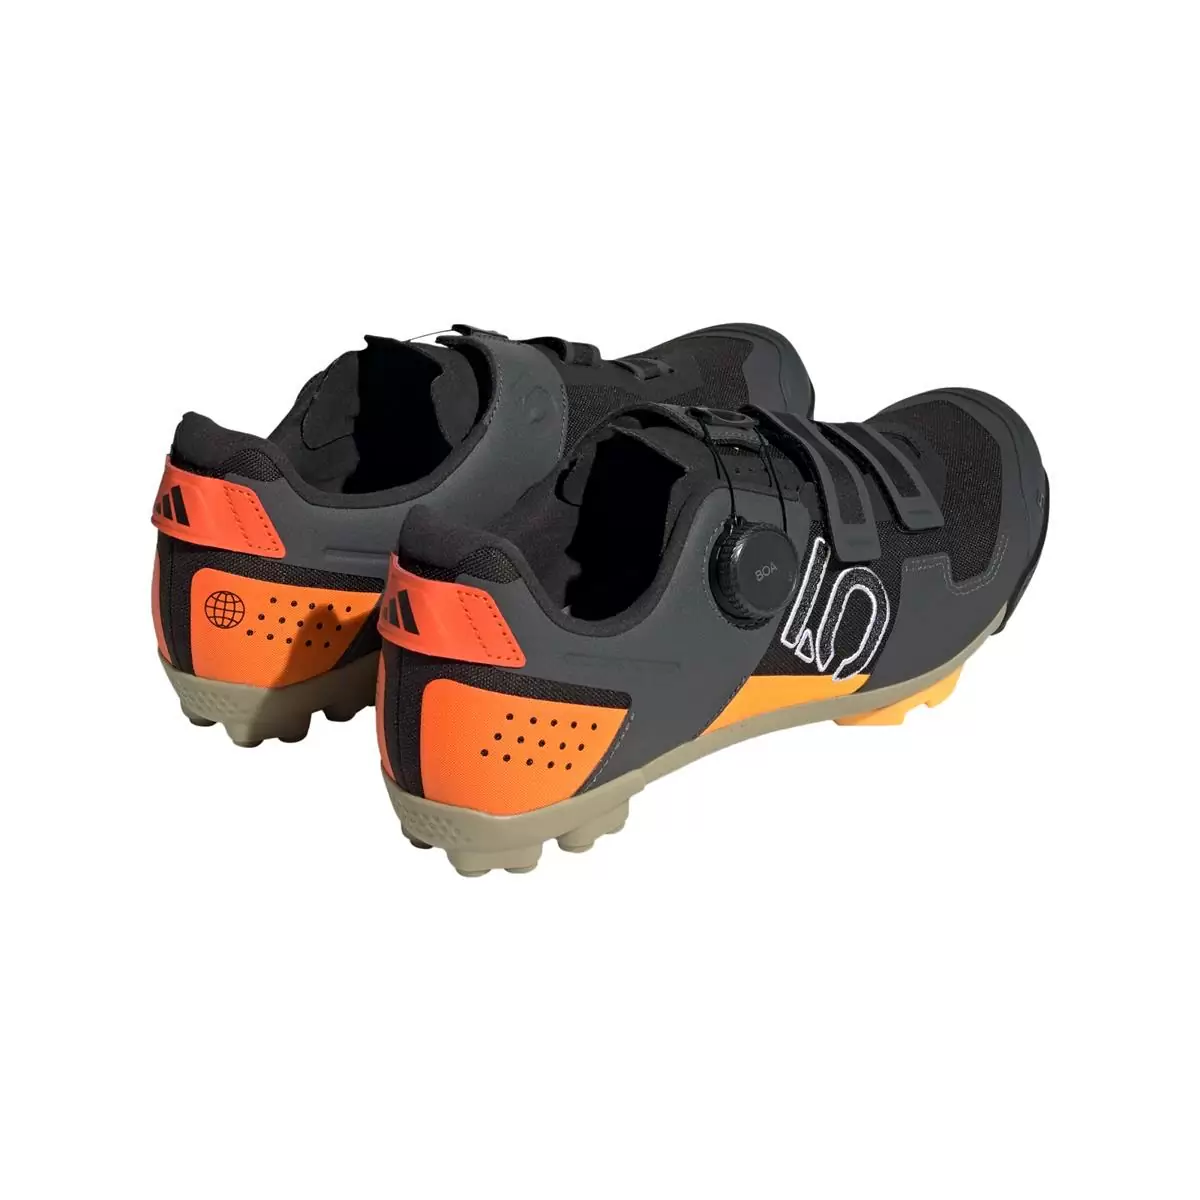 Clip 5.10 Kestrel Boa MTB-Schuhe Schwarz/Orange Größe 43 #4